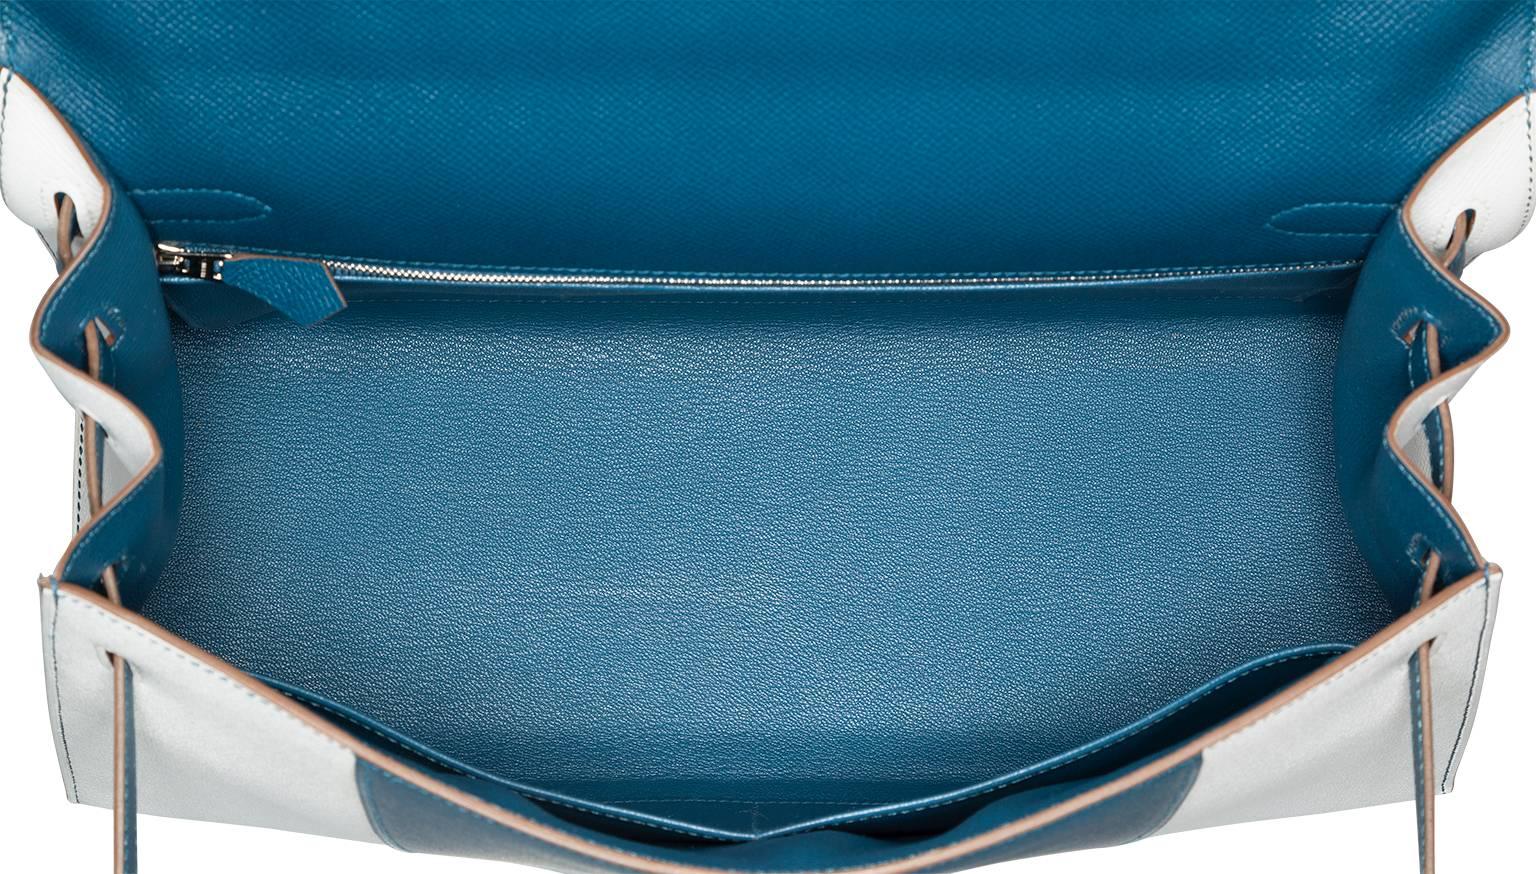 Hermes 35cm Blue Thalassa & White Epsom Leather Sellier Flag Kelly Bag 1